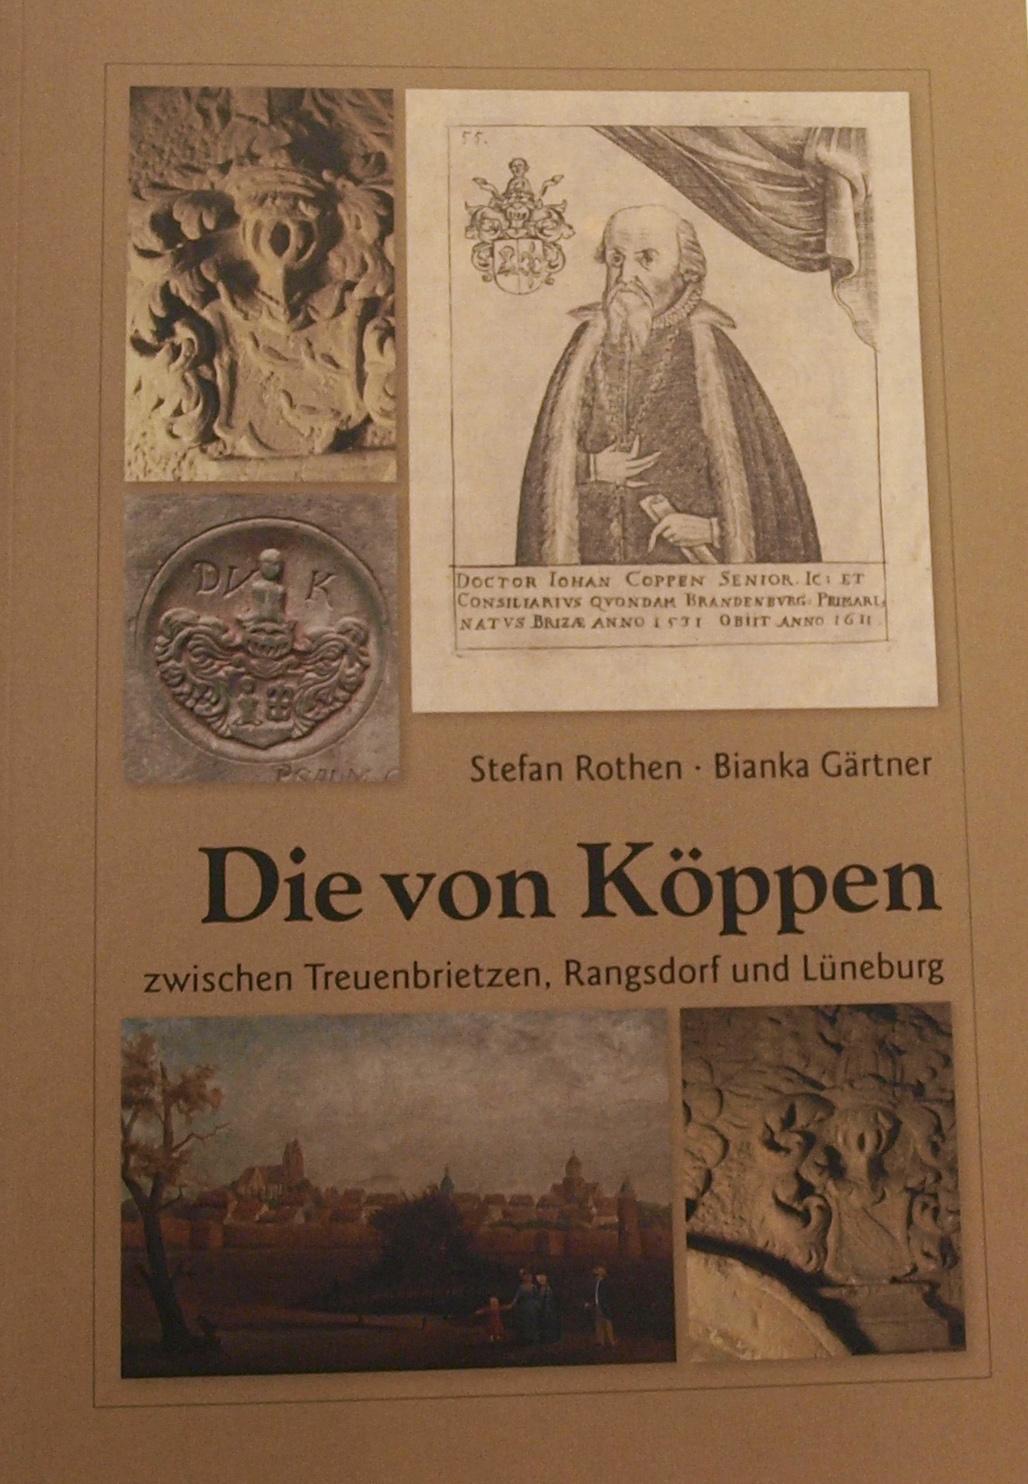 © Titelseite des Buches "Die von Köppen"